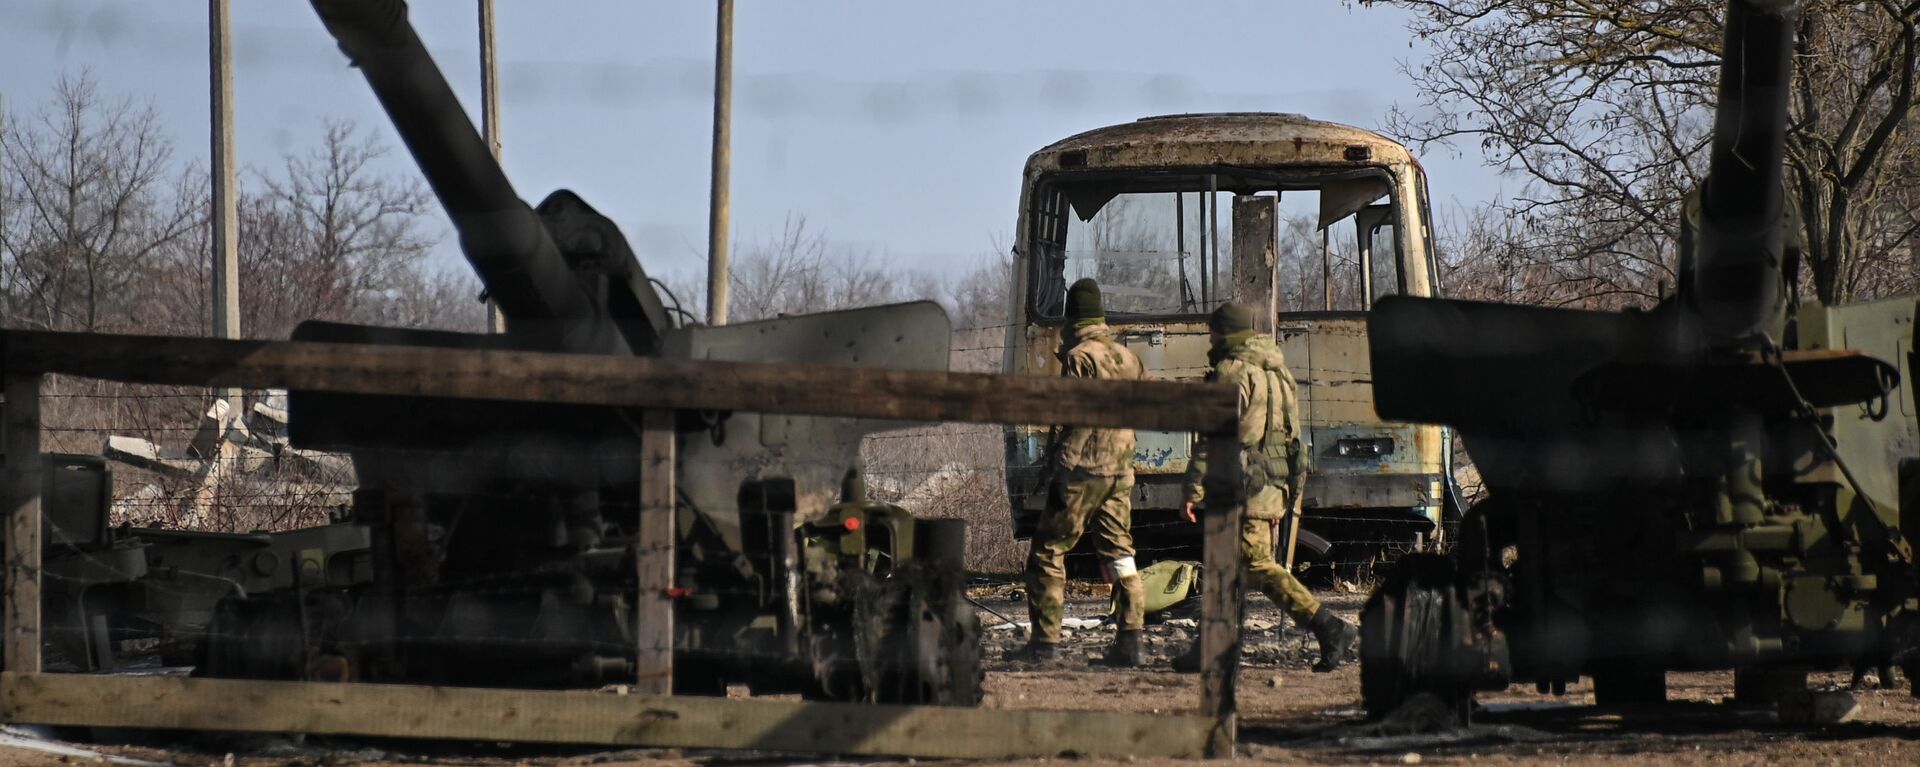 مدفع هاوتزر من وحدة مدفعية تركتها القوات المسلحة الأوكرانية في بيرديانسك، أوكرانيا 12 مارس 2022 - سبوتنيك عربي, 1920, 23.05.2022